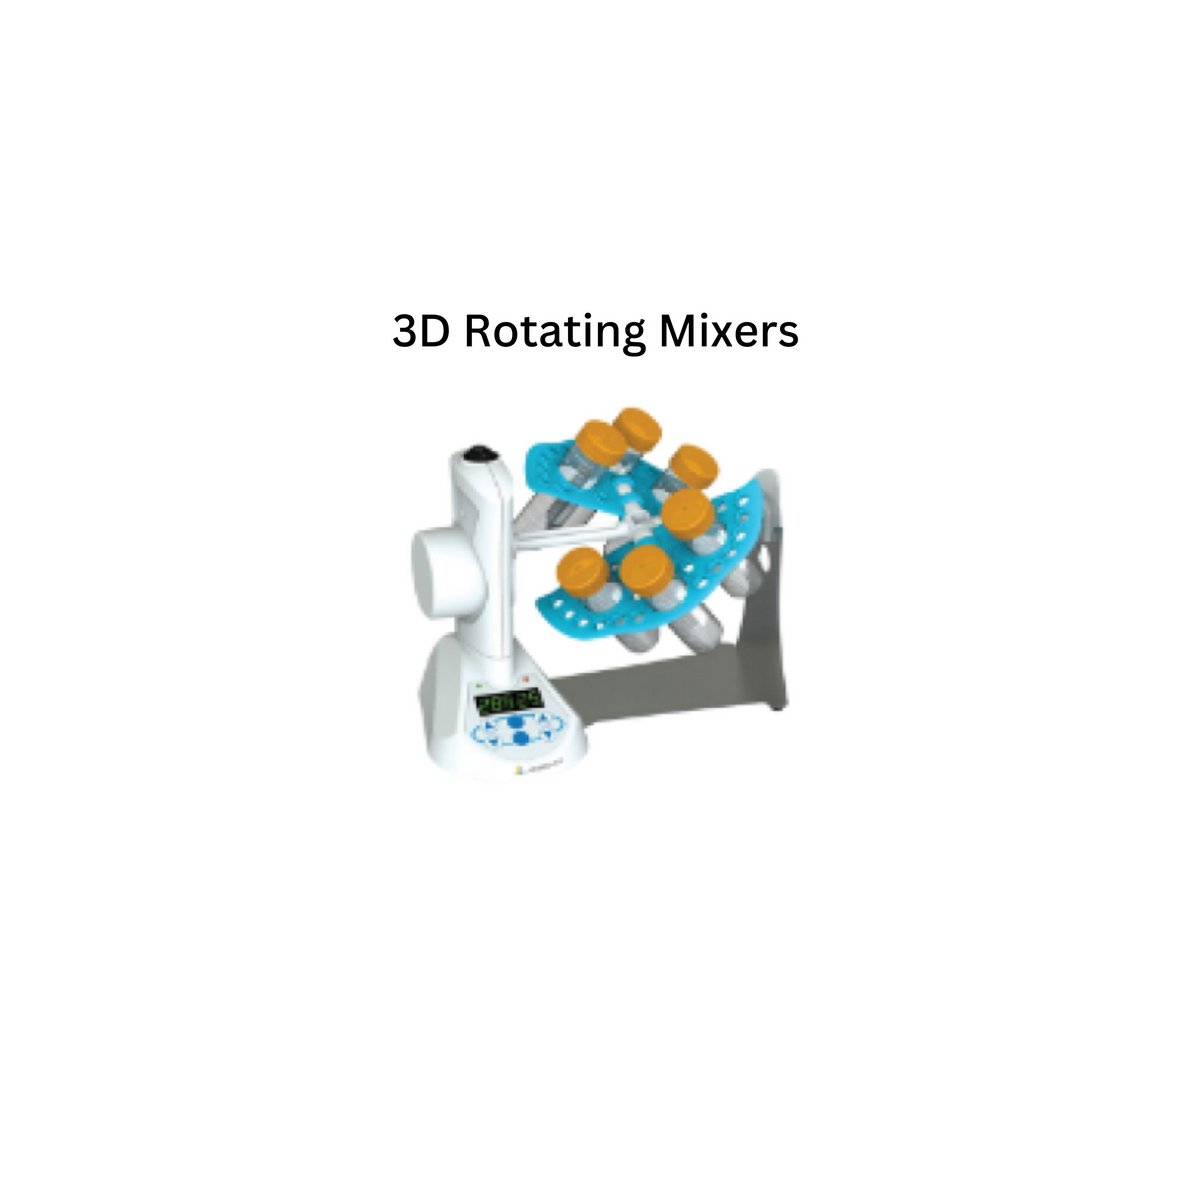 3D Rotating Mixers.jpg